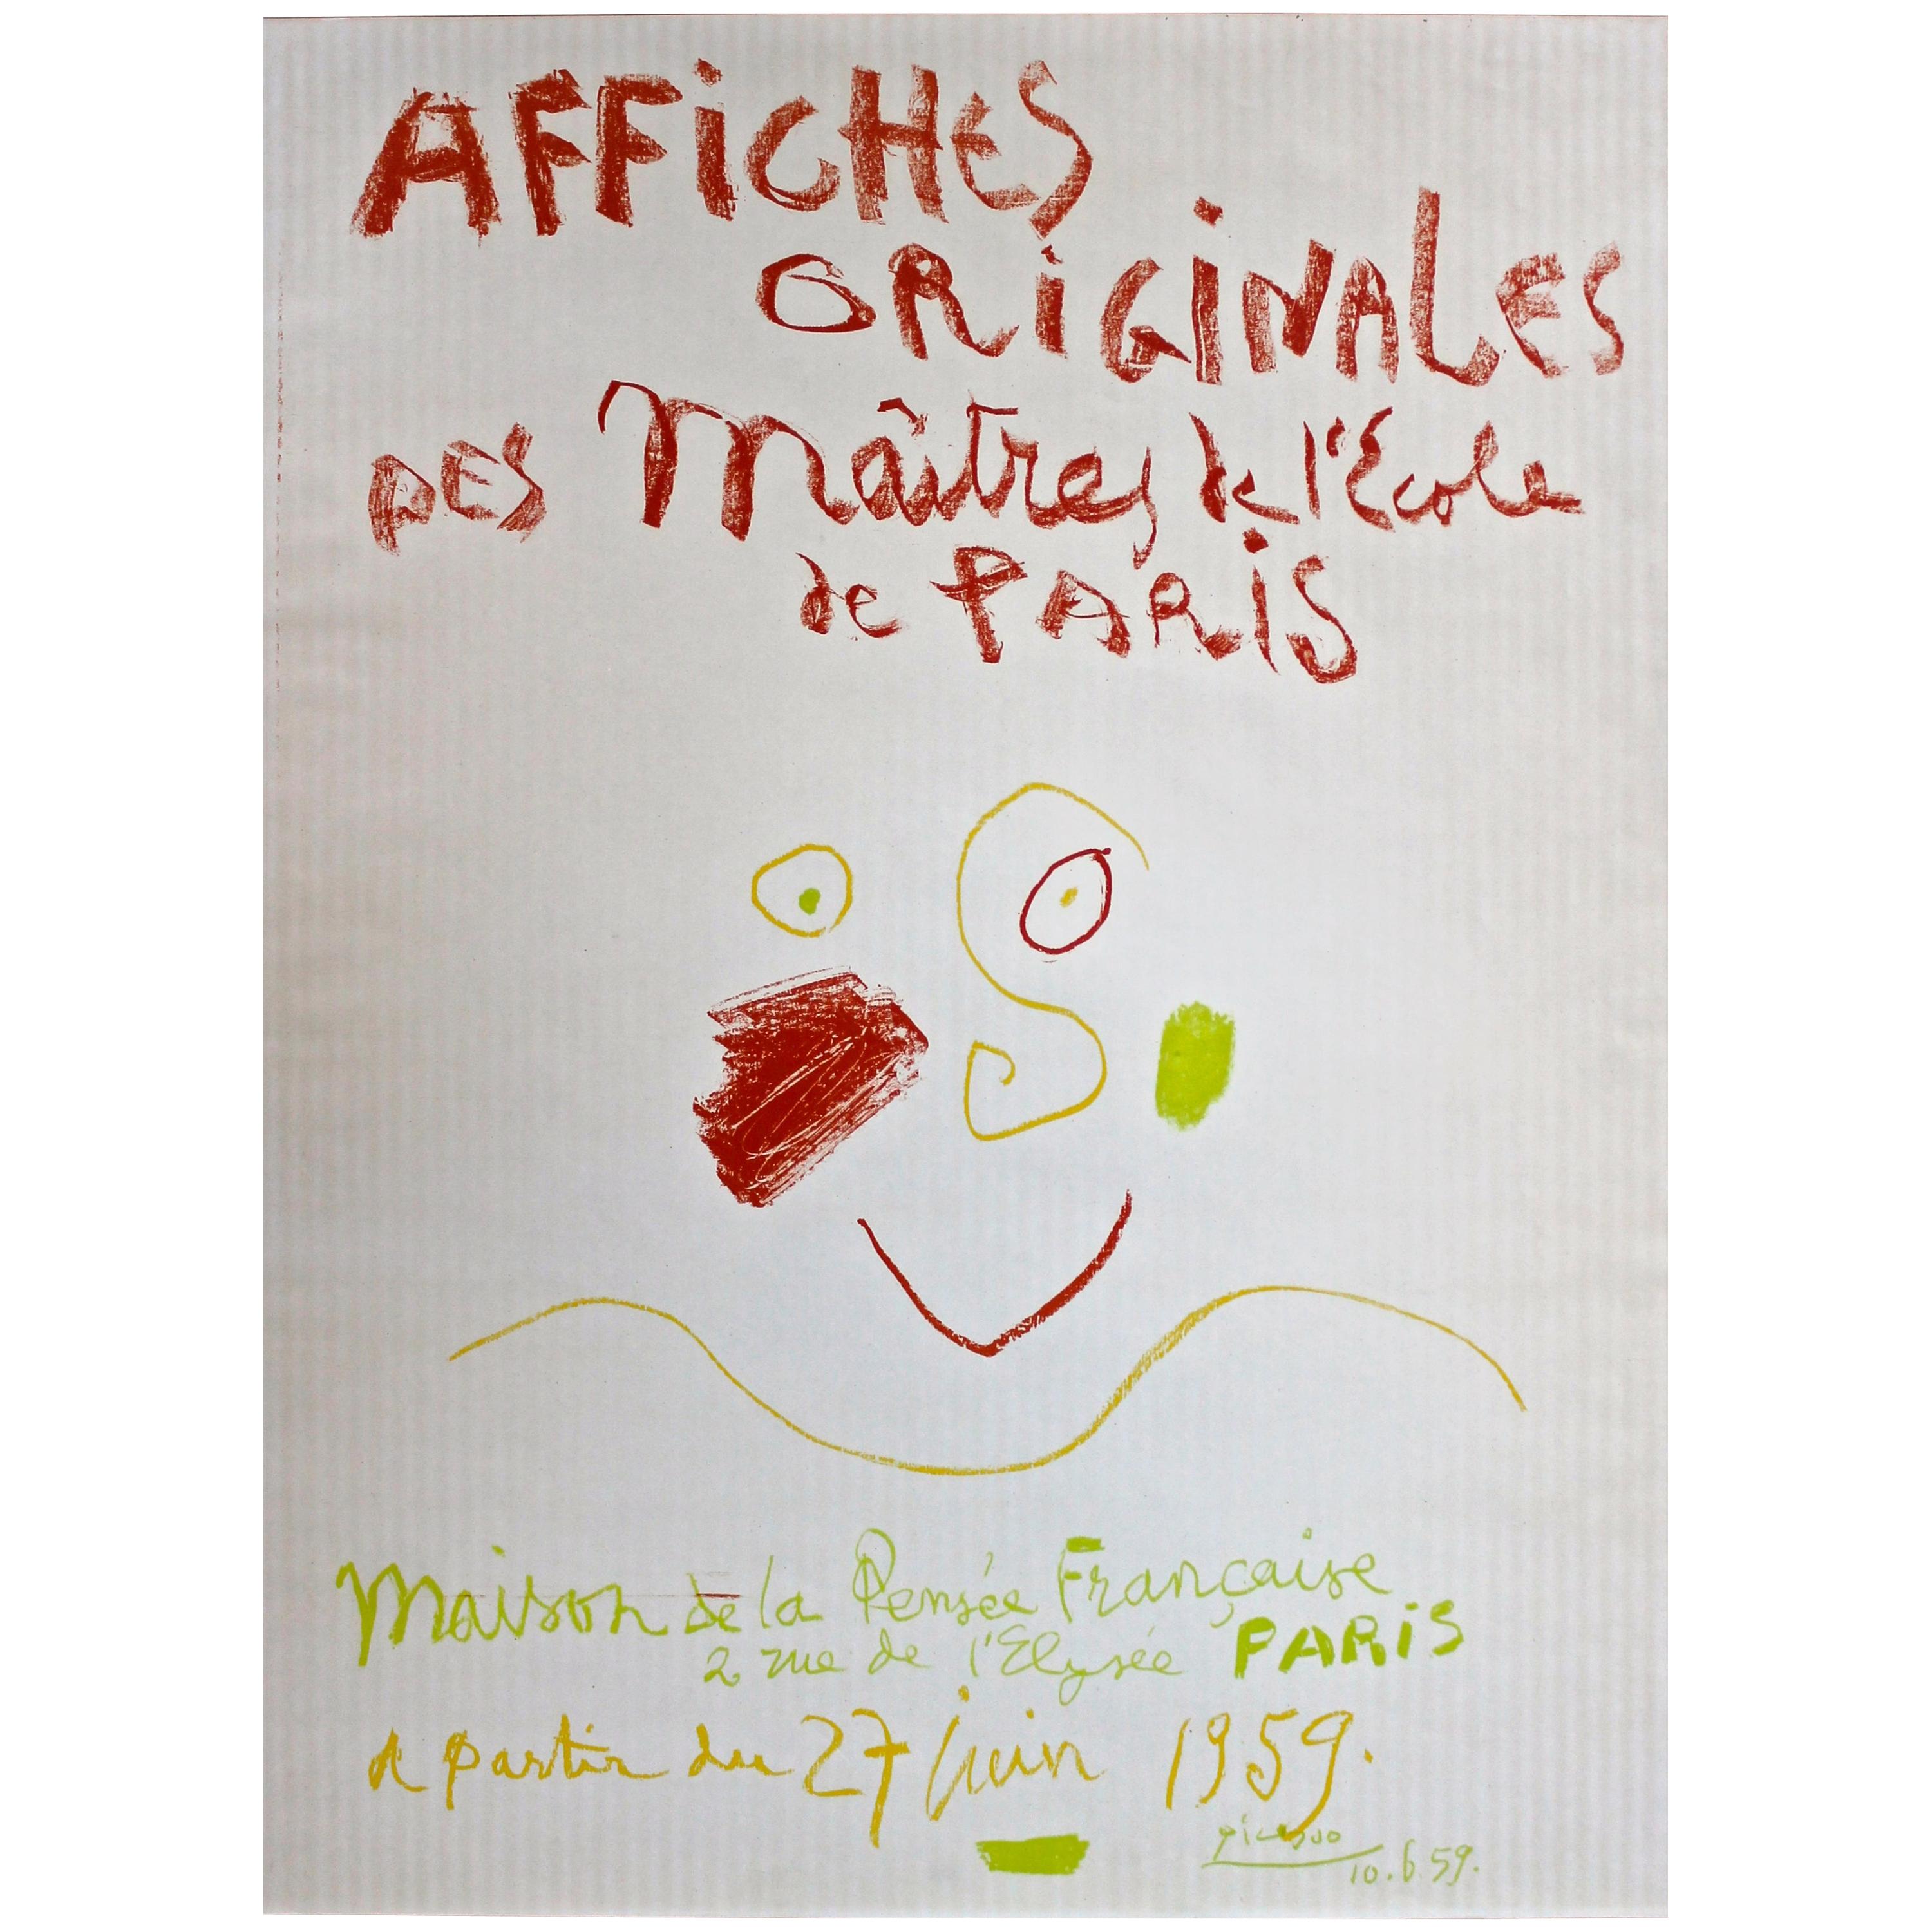 Affiche de Pablo Picasso "Affiches Originales des Maitres de l'École de Paris" 1959 